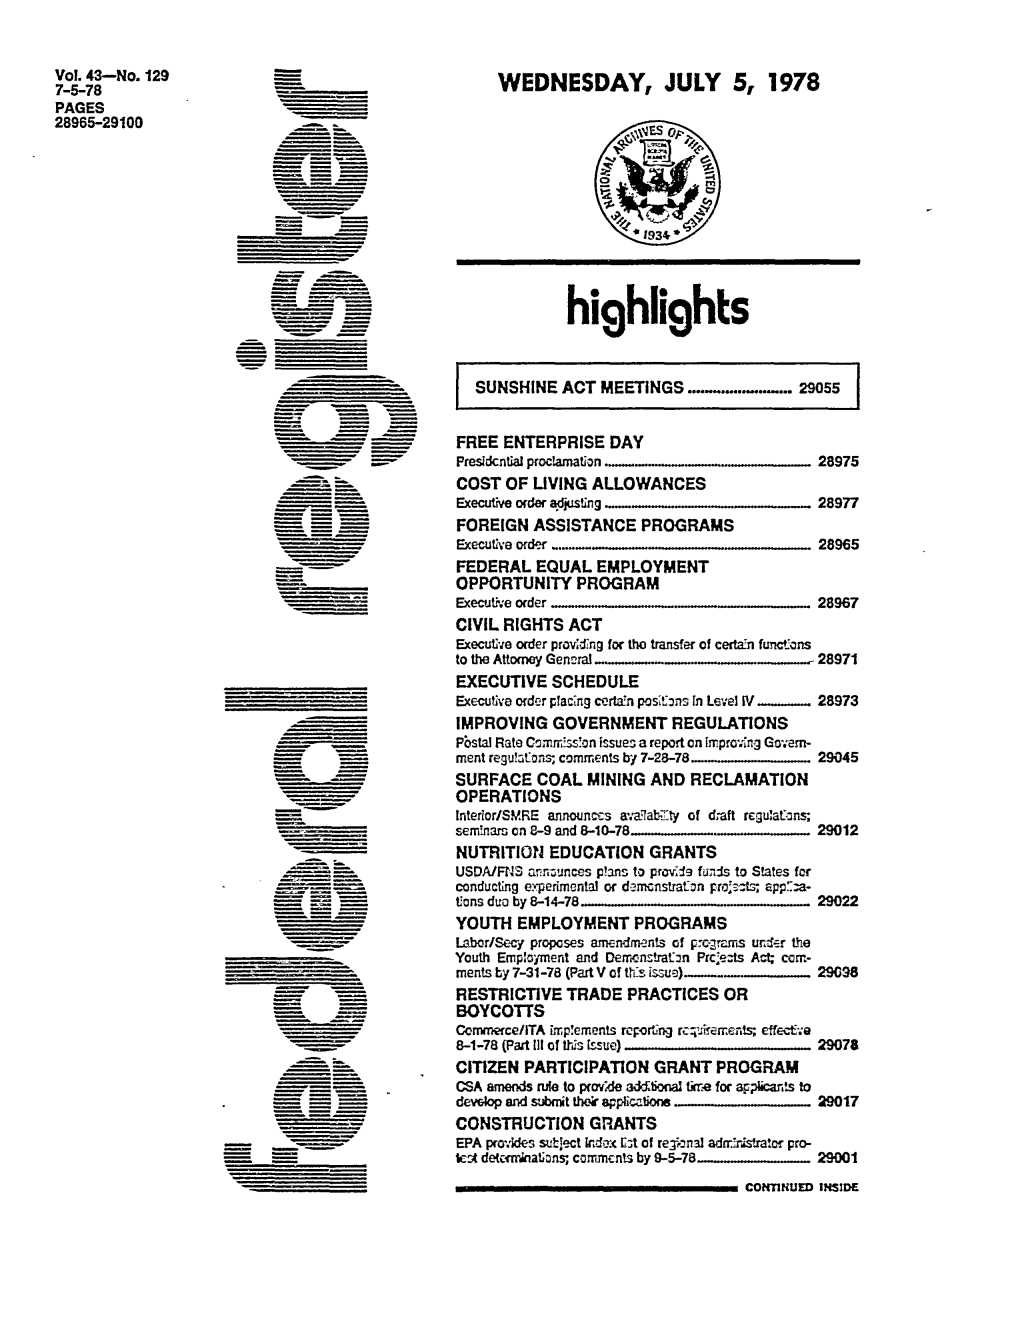 Federal Register: 43 Fed. Reg. 28965 (July 5, 1978)